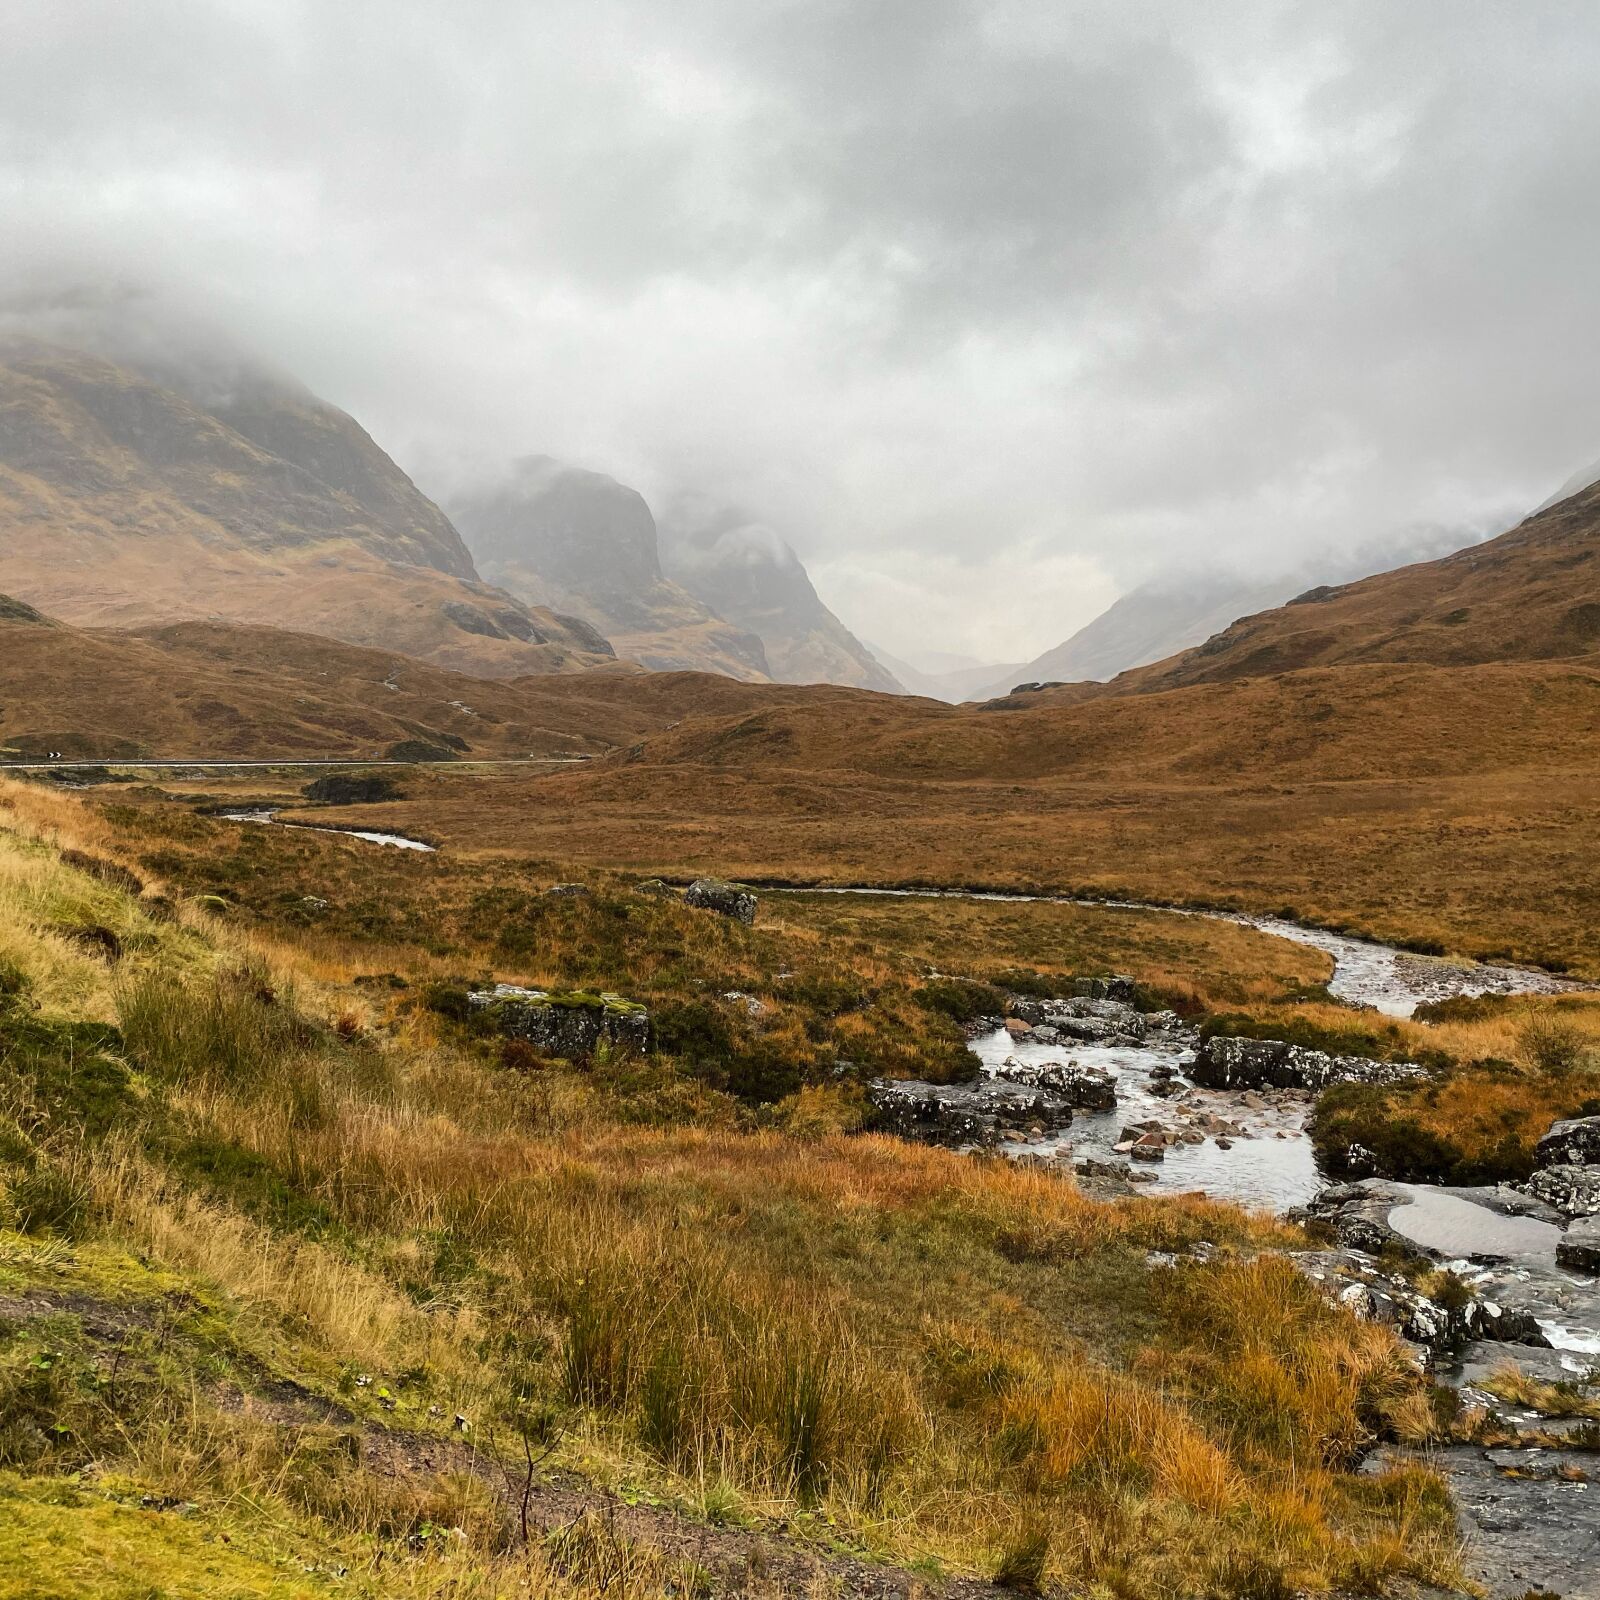 Apple iPhone 11 Pro sample photo. Glencoe, highlands, scotland photography